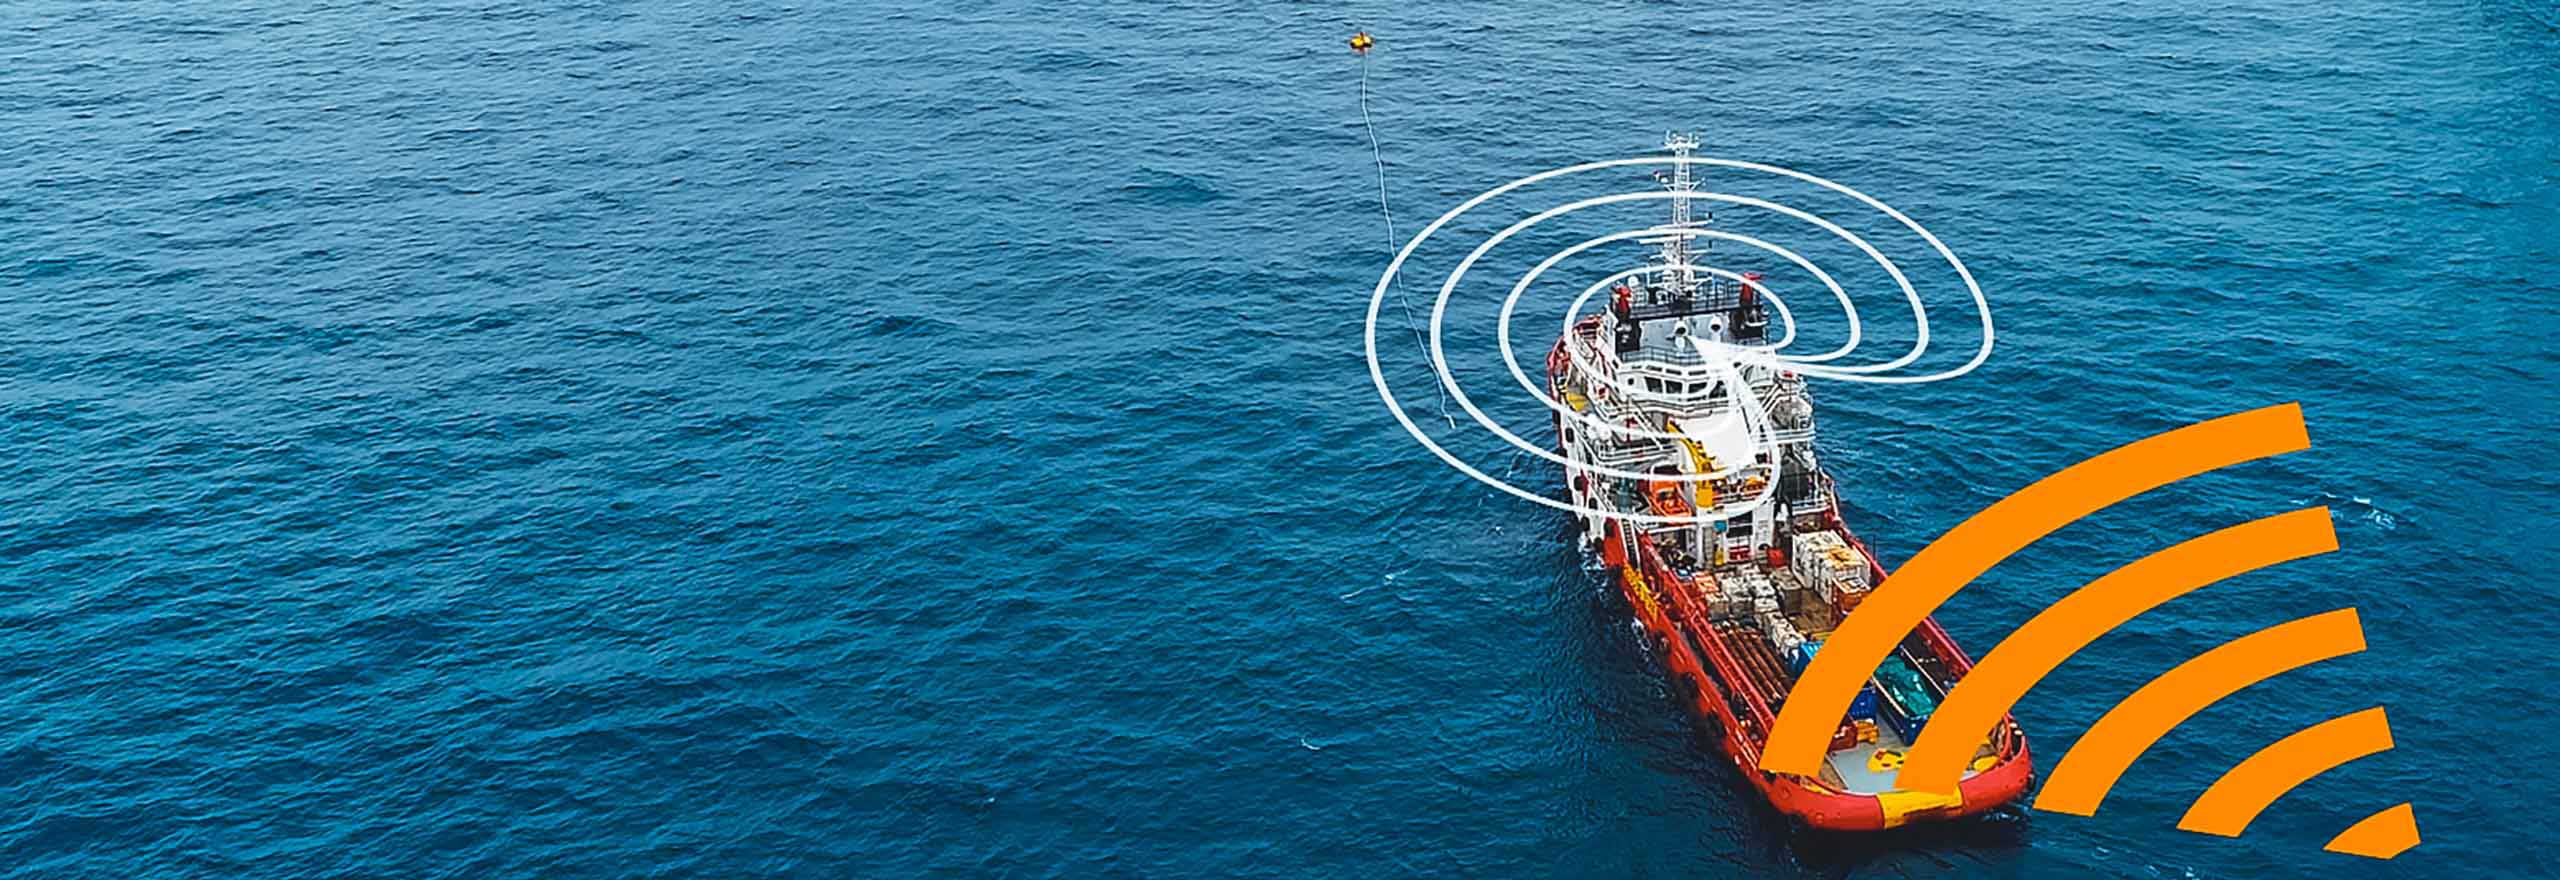 対防信技術がどのように反応し、妨害を緩和するかを見せる海洋石油掘削装置近くの海中にある赤色と白色の船舶。